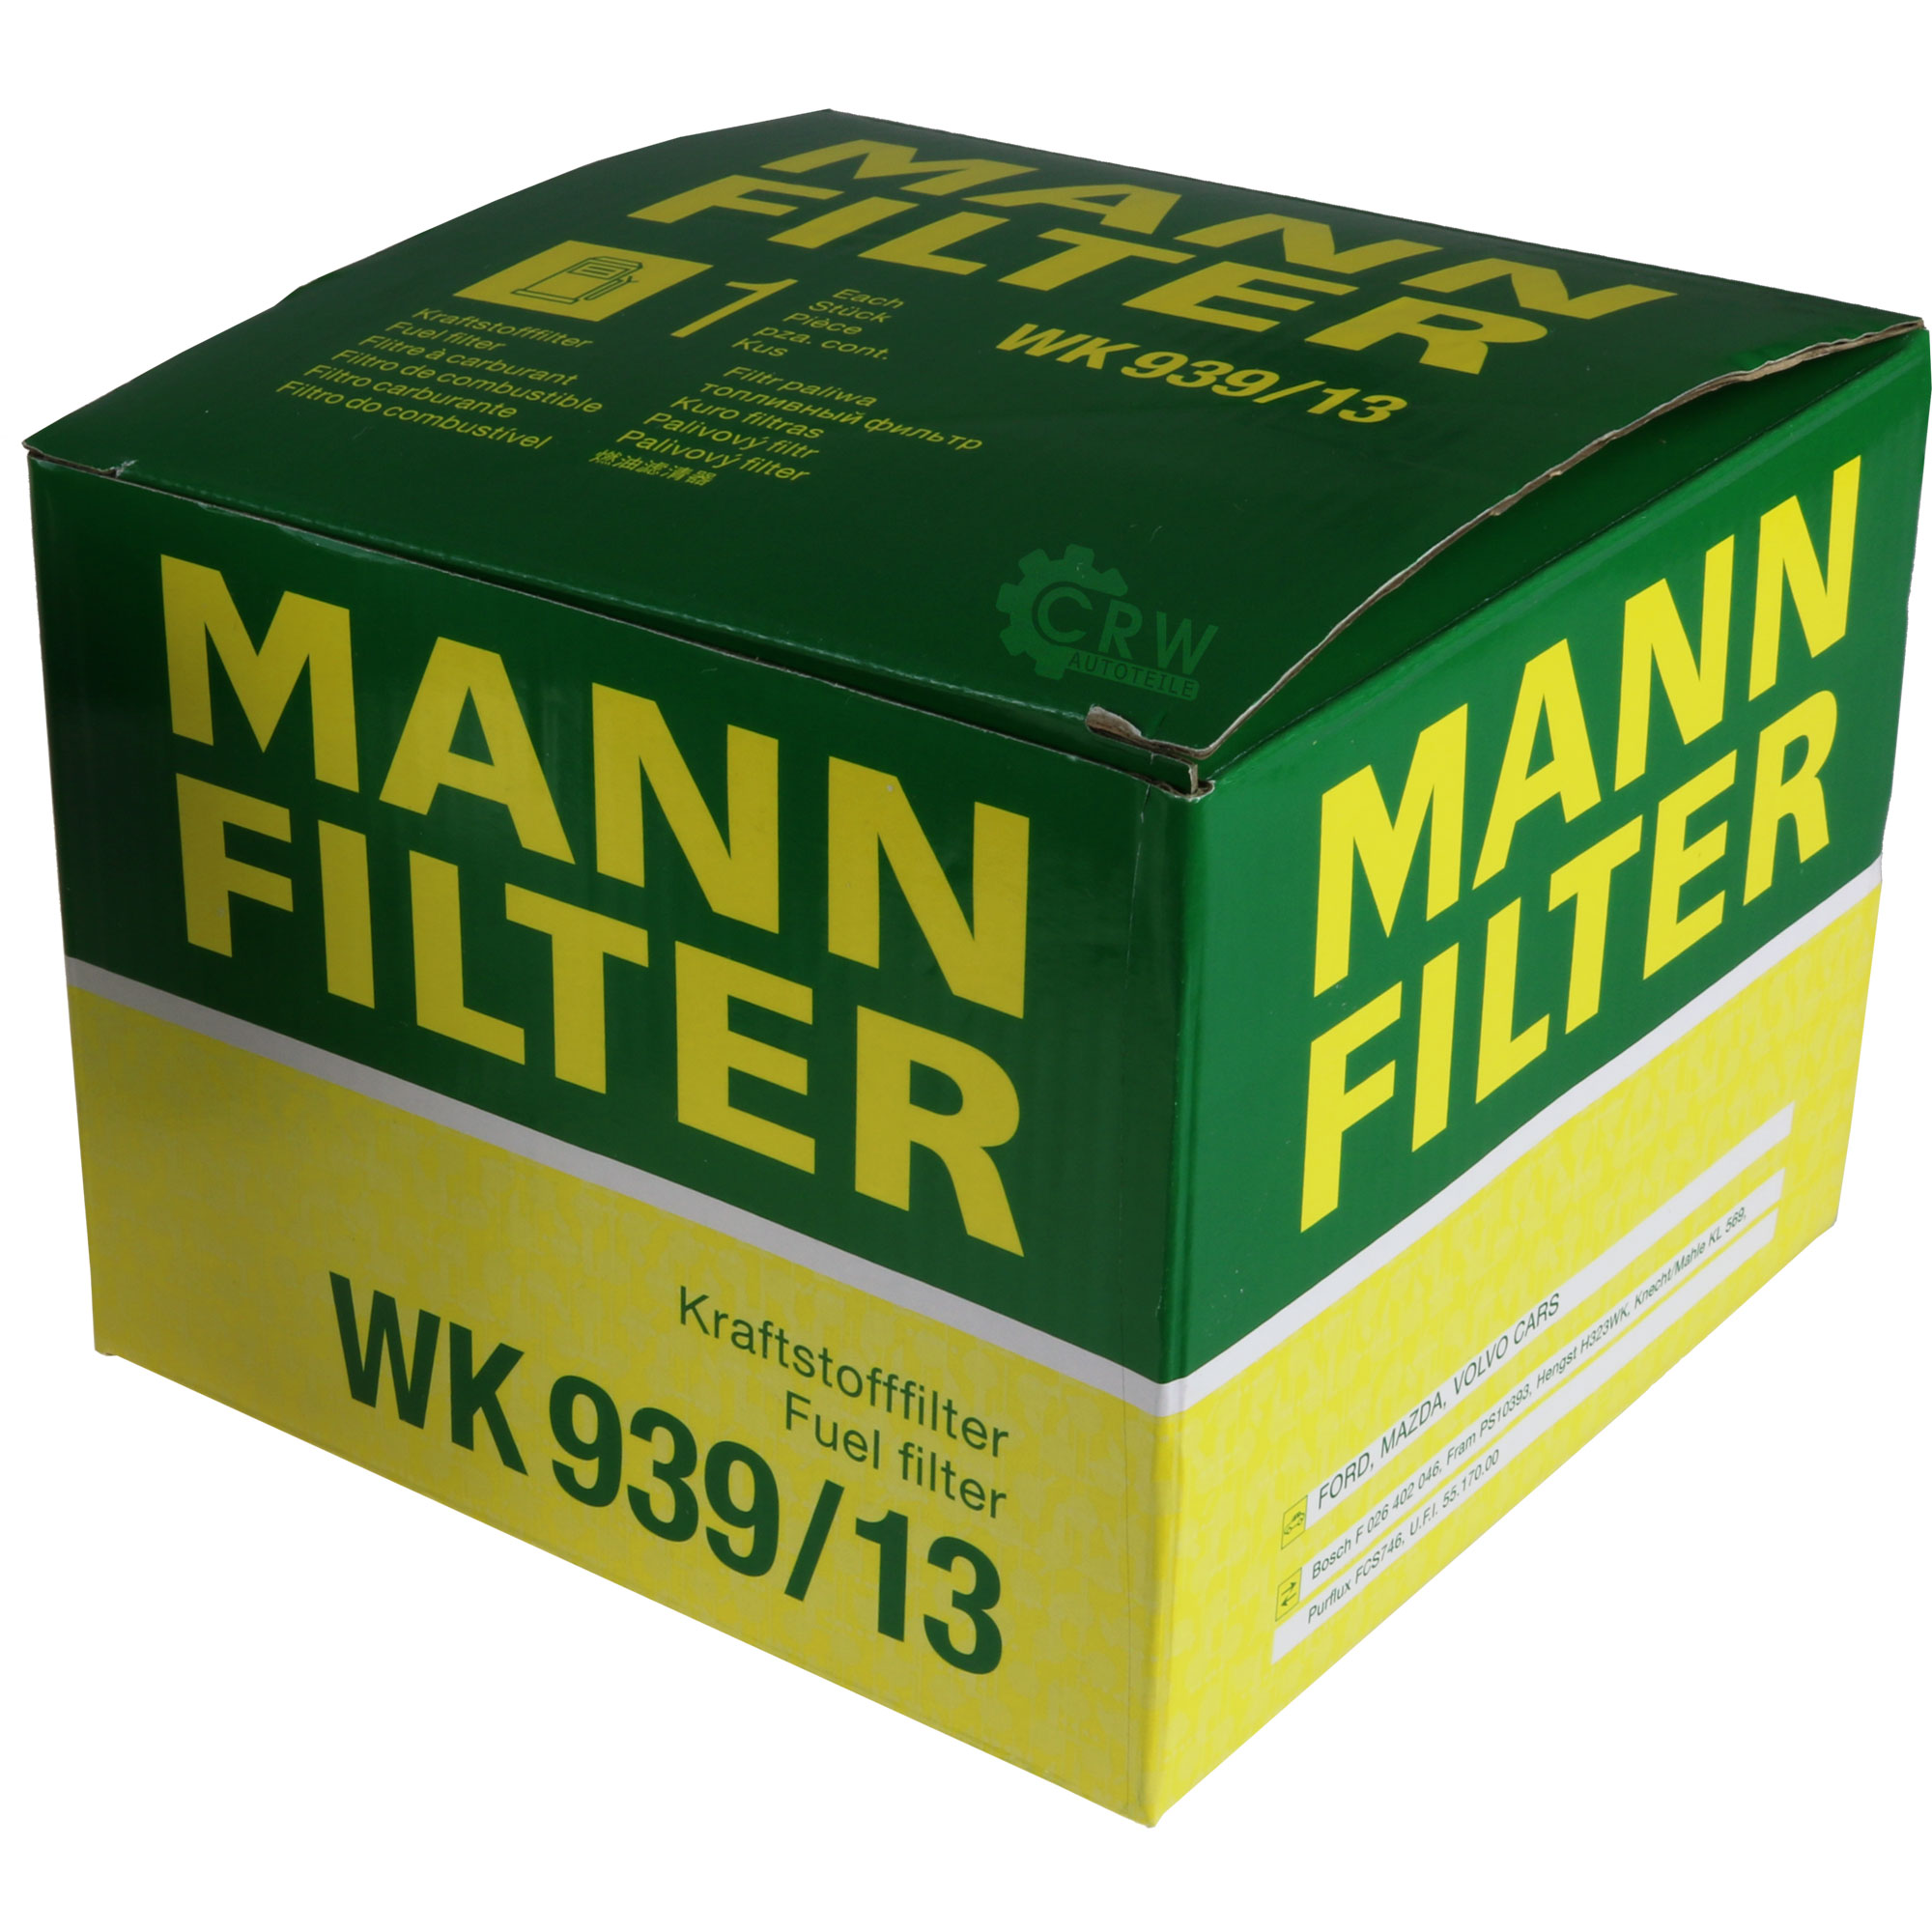 MANN-FILTER Kraftstofffilter WK 939/13 Fuel Filter